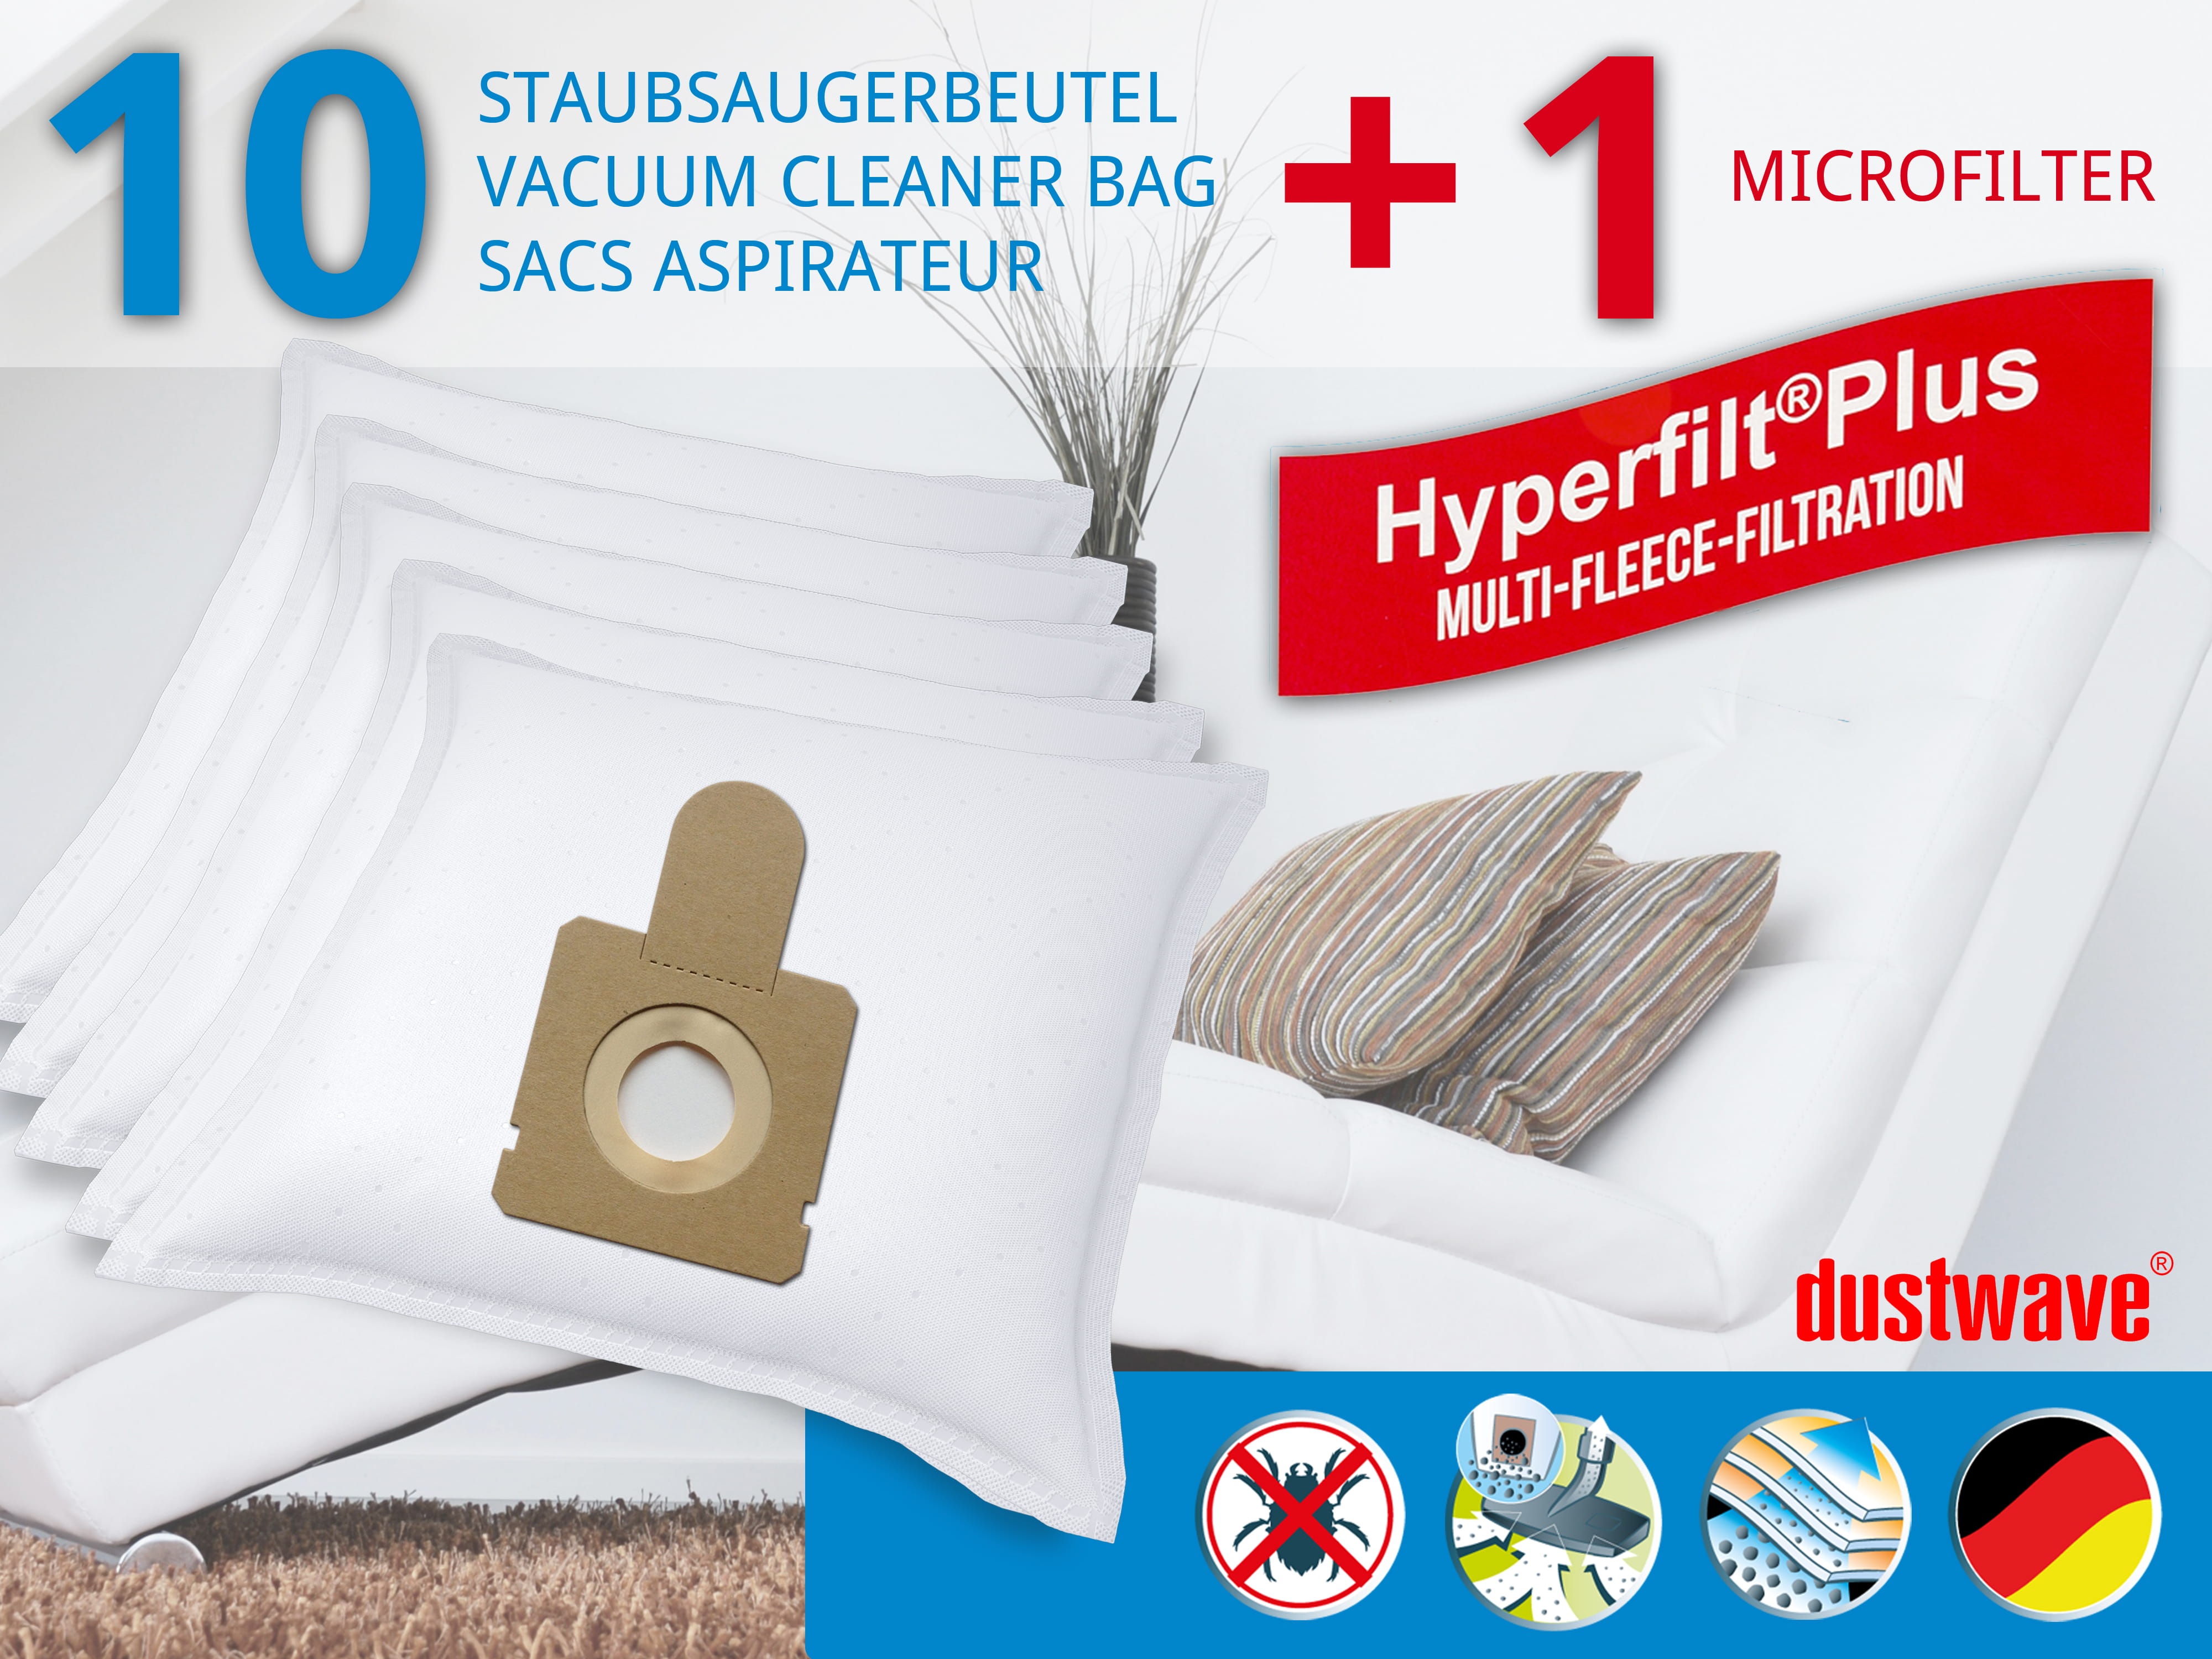 Dustwave® 10 Staubsaugerbeutel für Hoover TW1670 / TRTW1670 - hocheffizient, mehrlagiges Mikrovlies mit Hygieneverschluss - Made in Germany